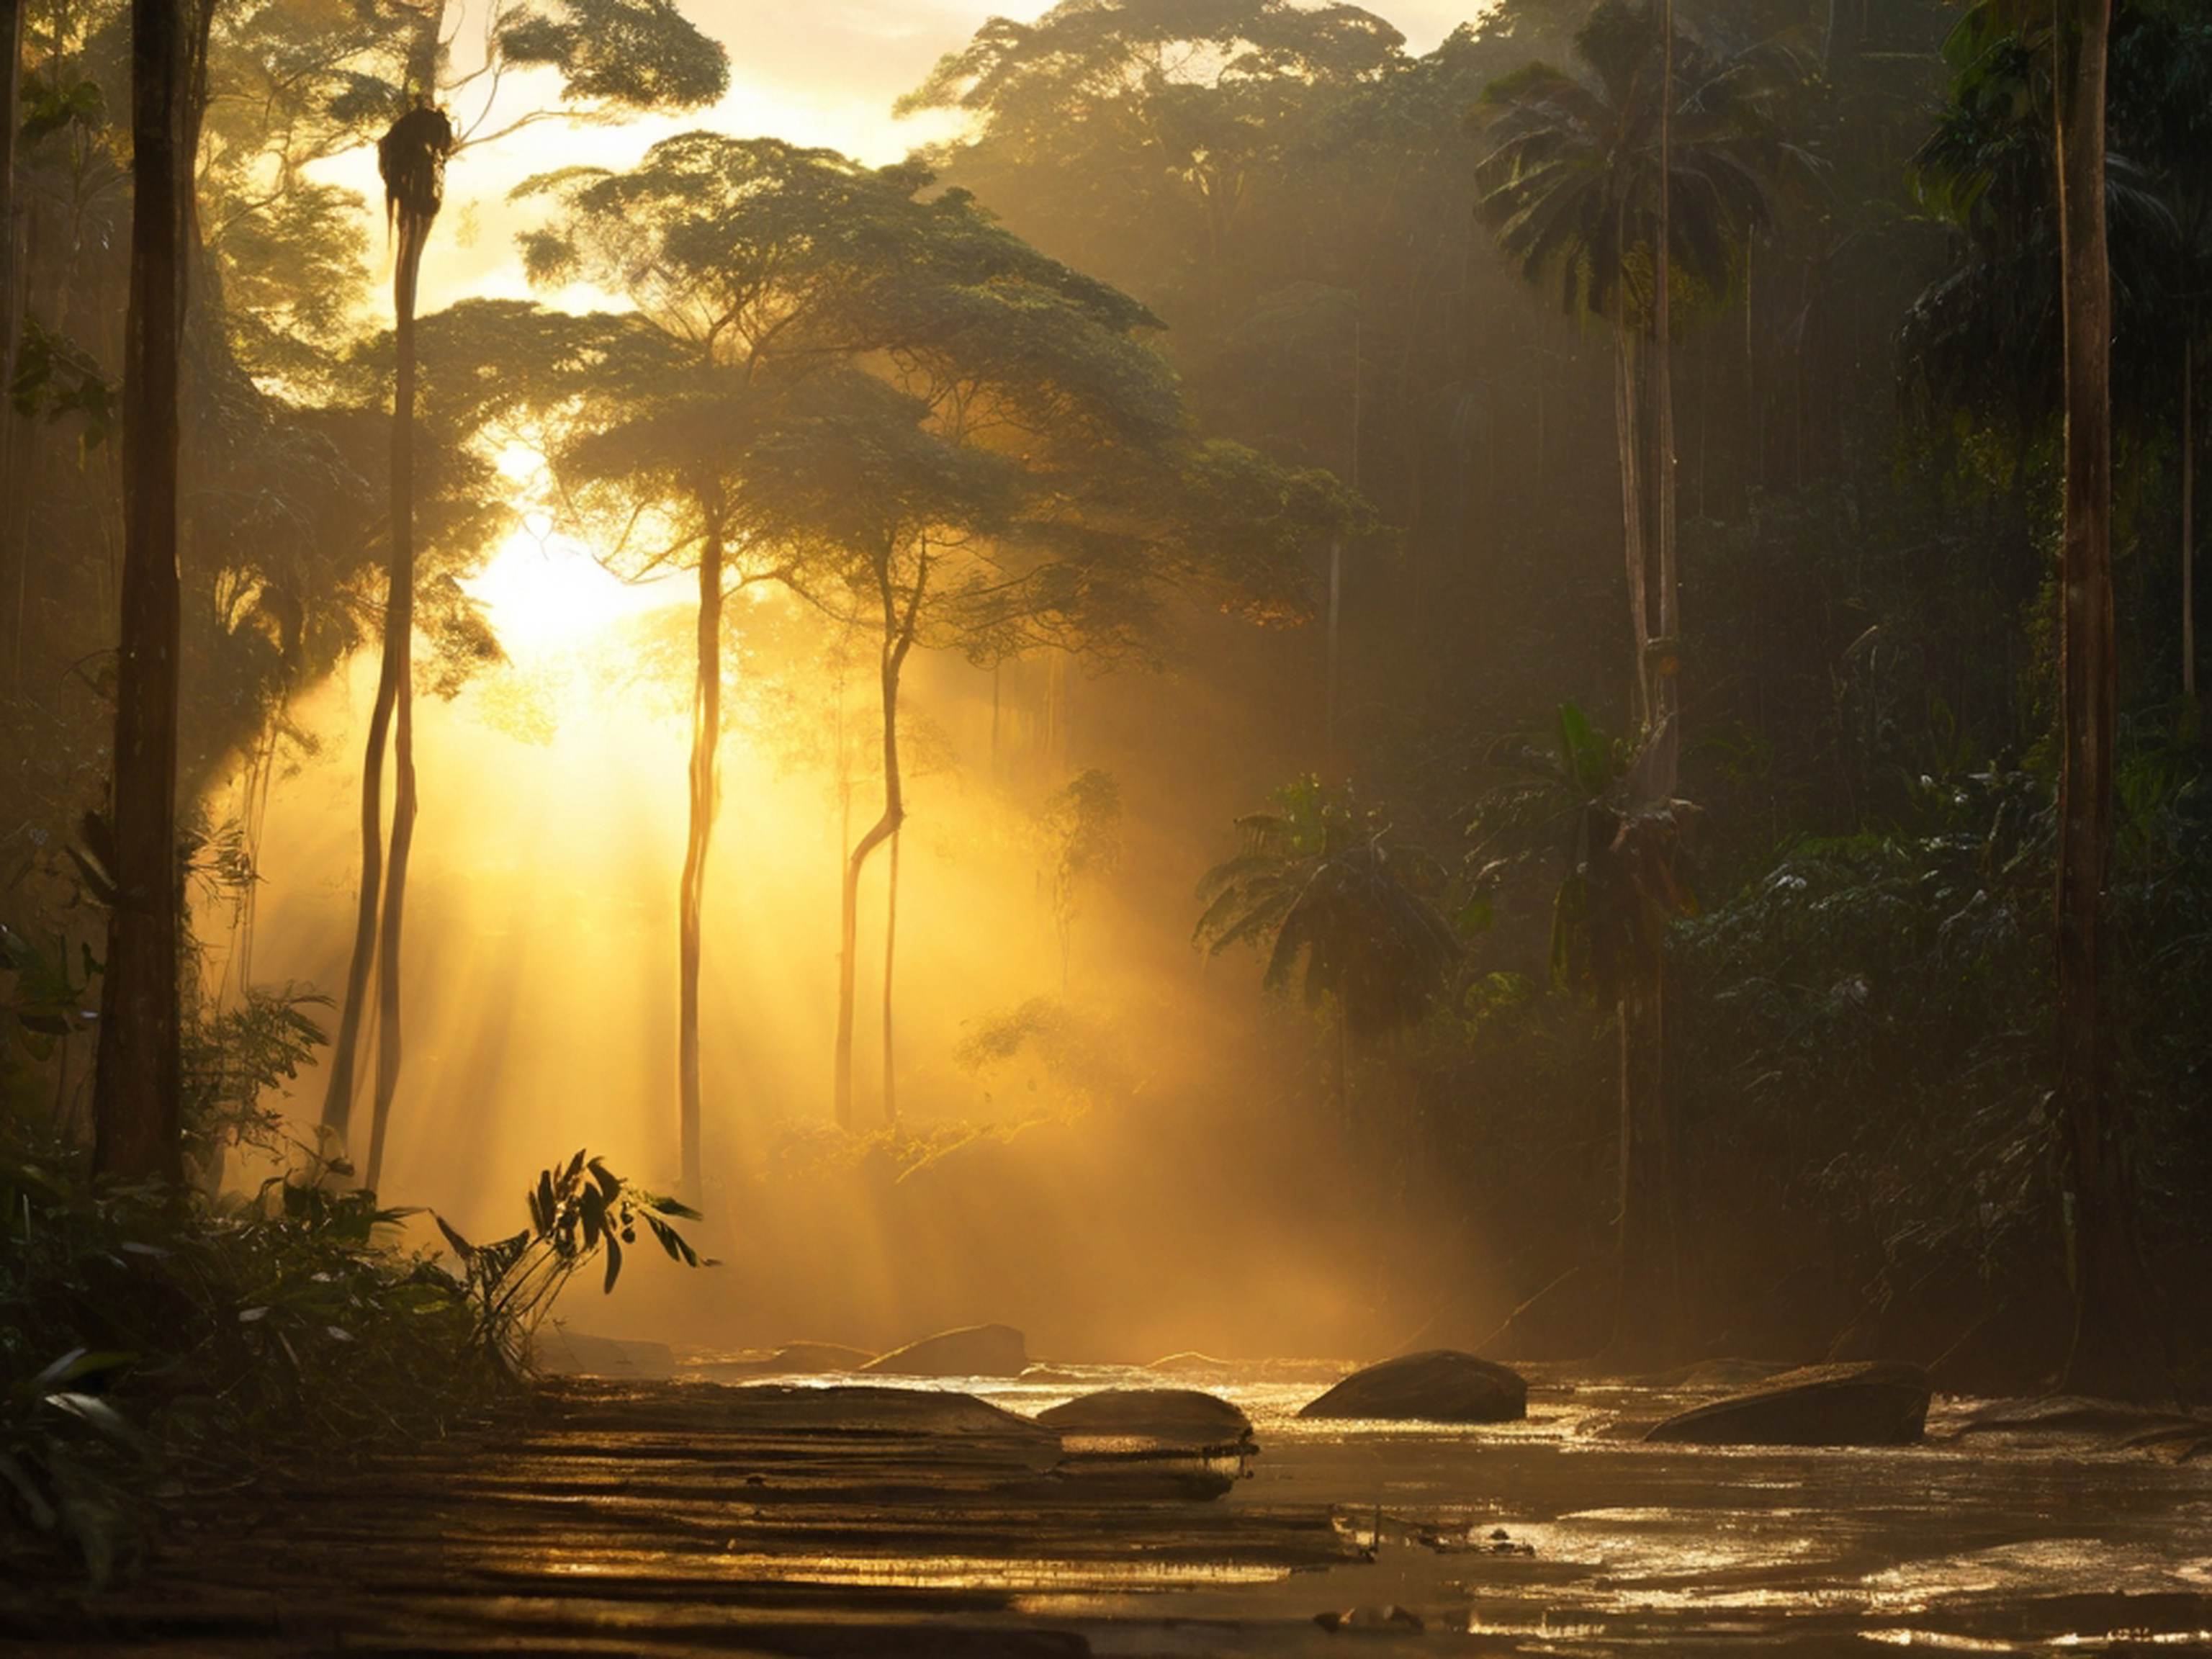 Nature's Detail: Sunbeams Piercing the Amazon Rainforest